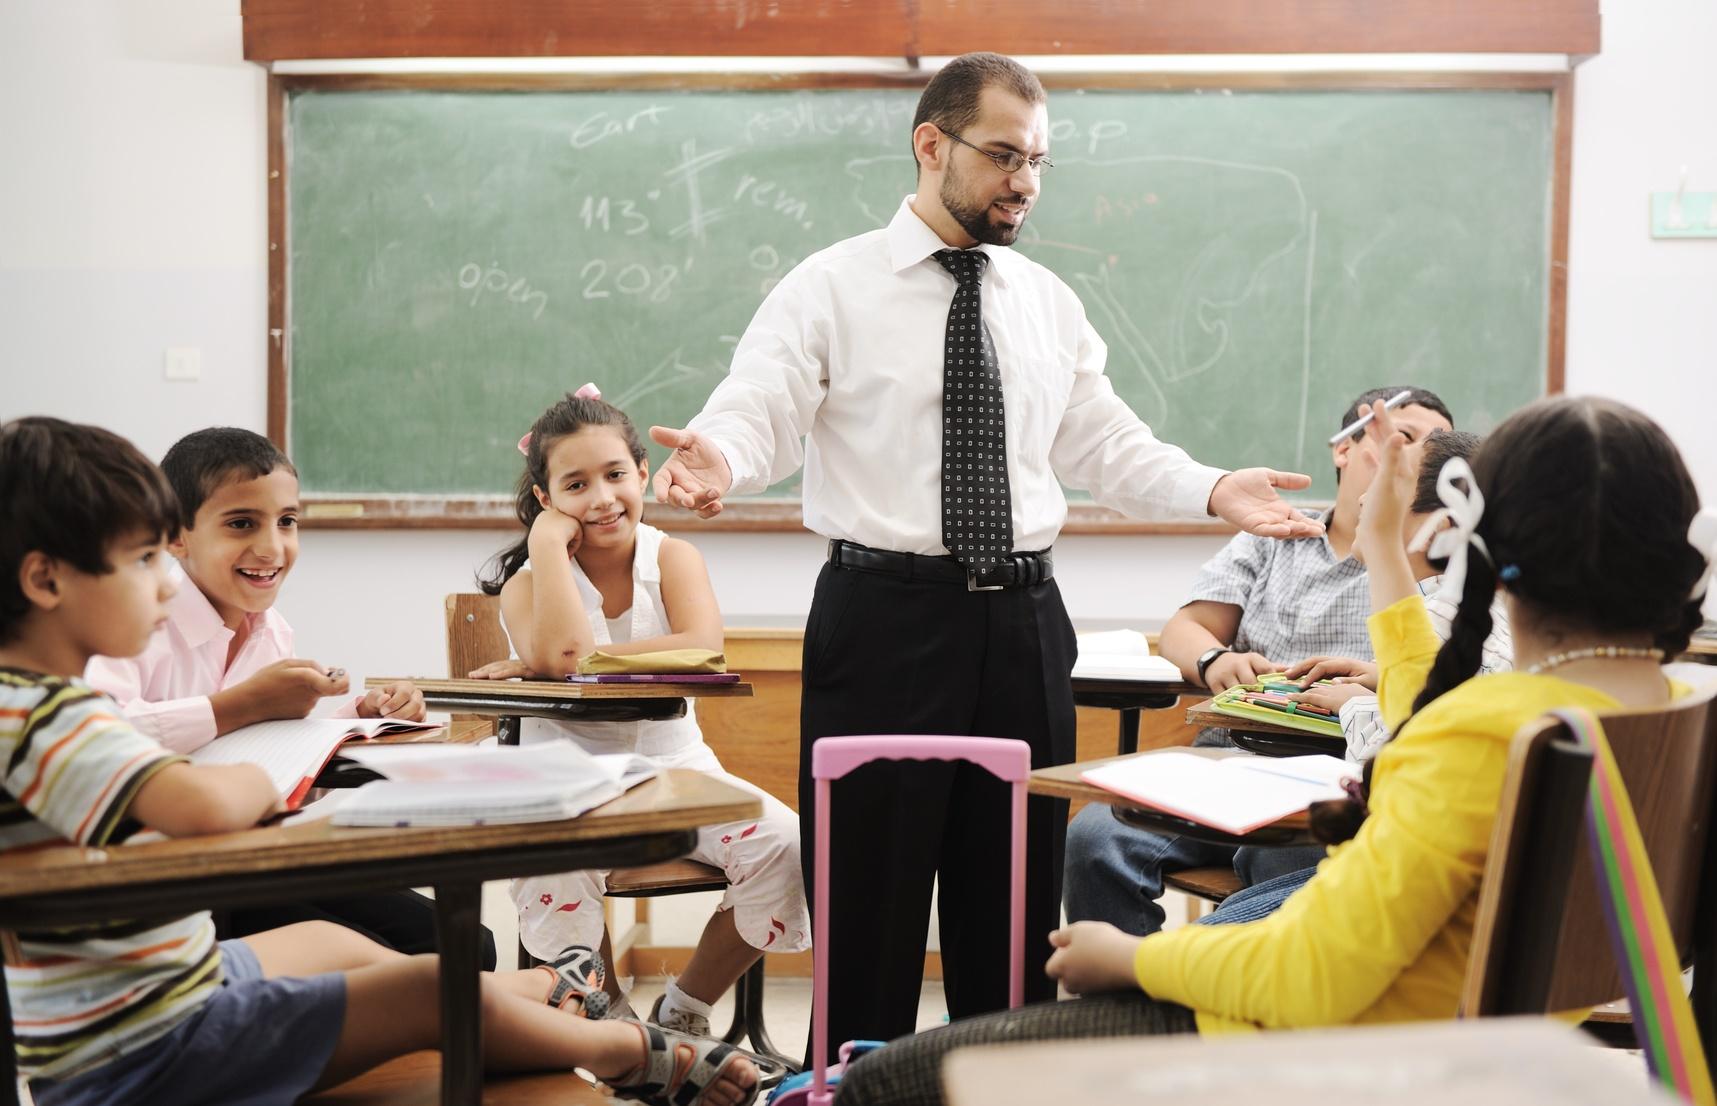 طرق ضبط الصف الدراسي بدون مشاكل ودون صراخ... نصائح للمعلمين